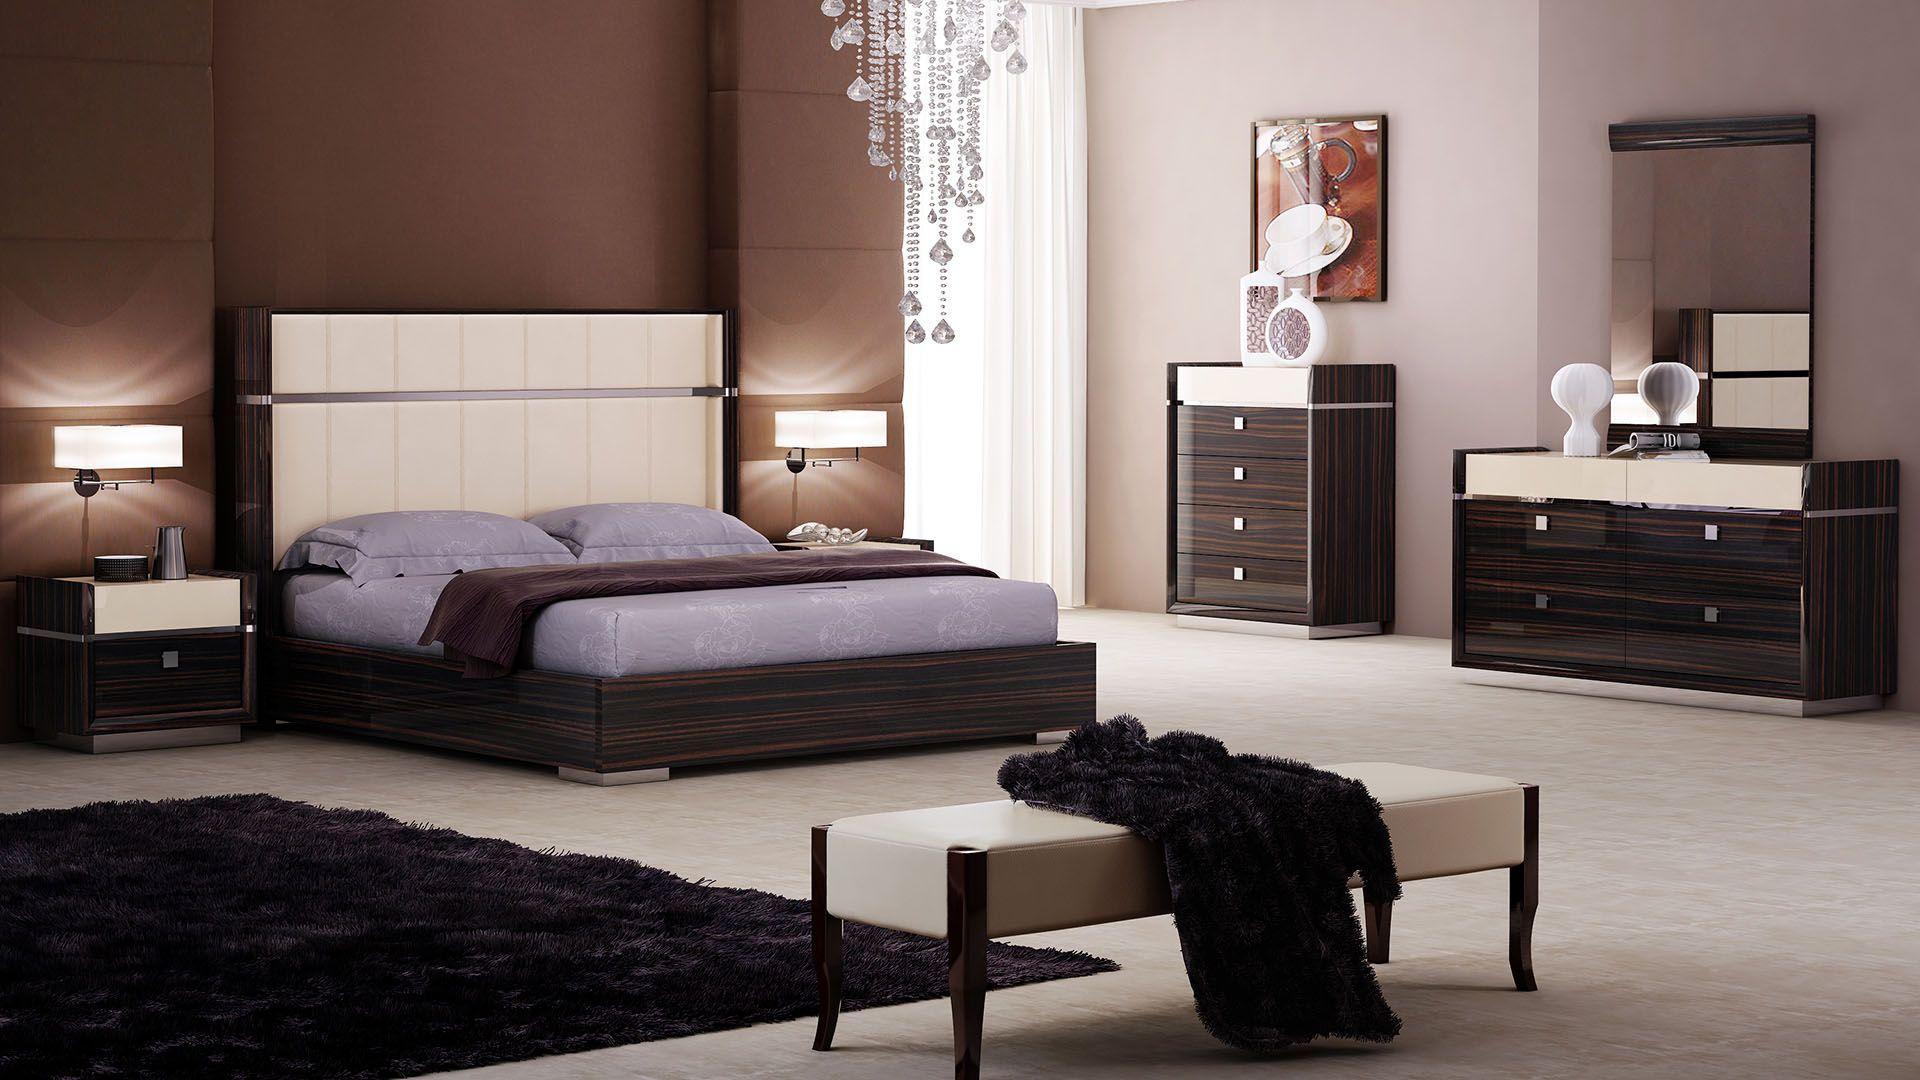 

    
Ebony Lacquer Queen Bedroom Set 4Pcs American Eagle P100-BED-Q Modern
